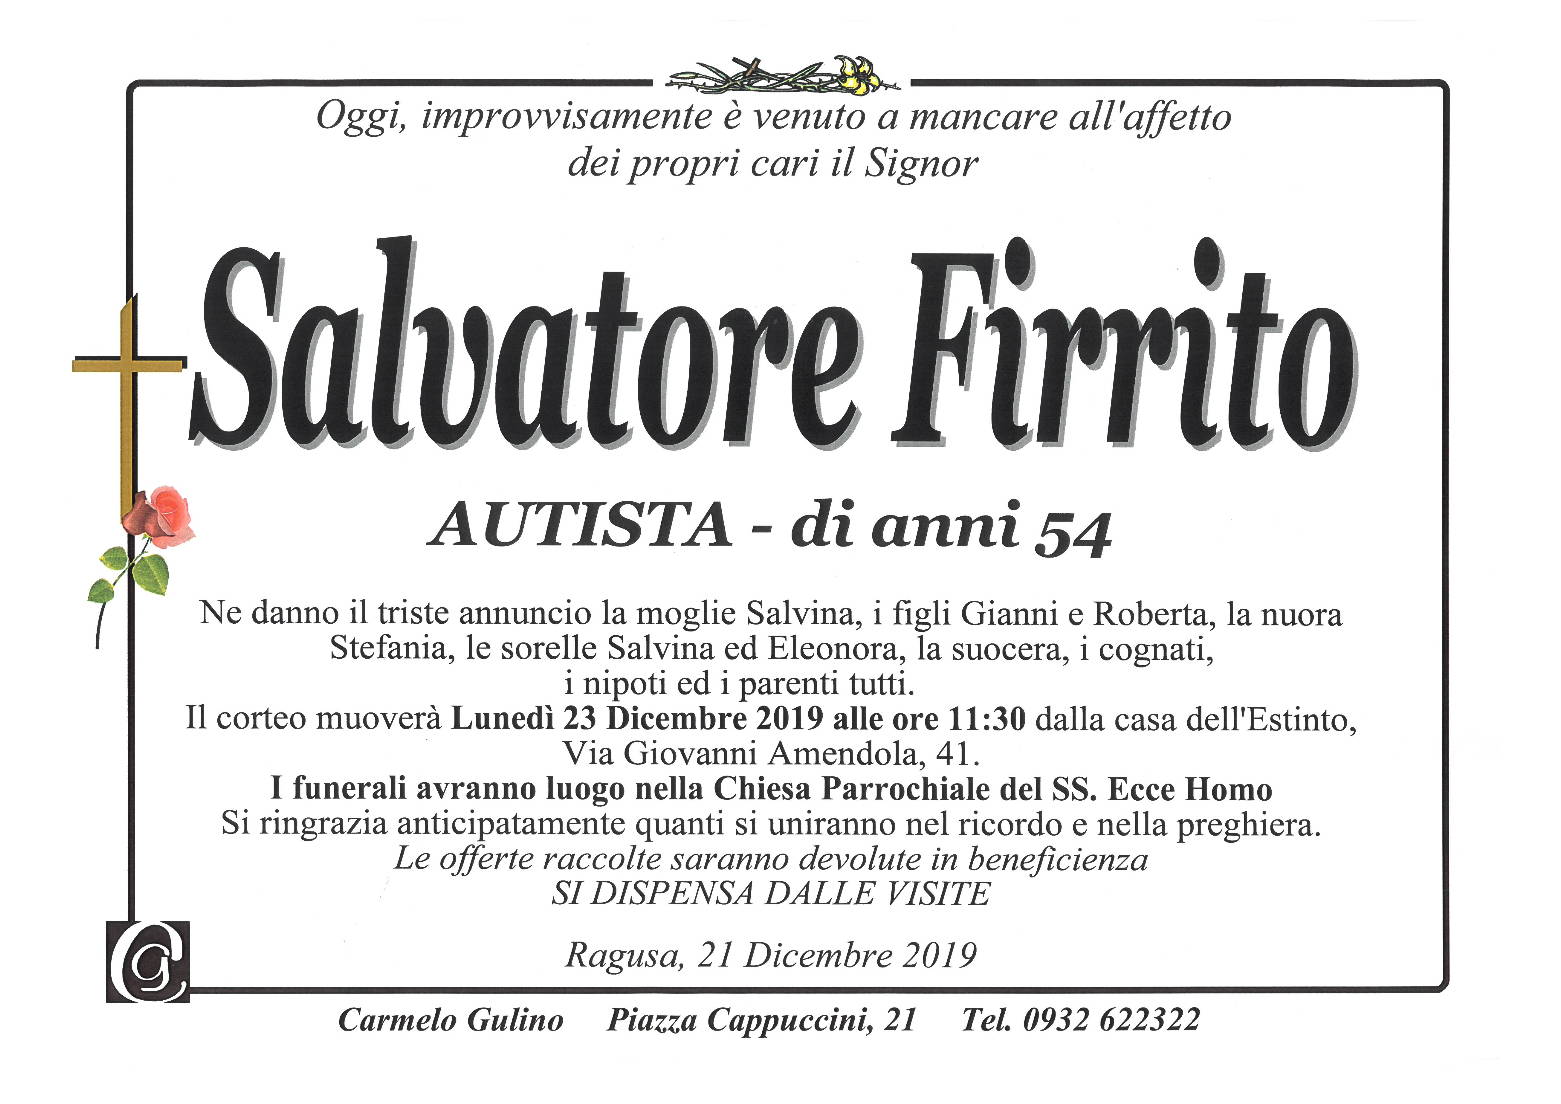 Salvatore Firrito